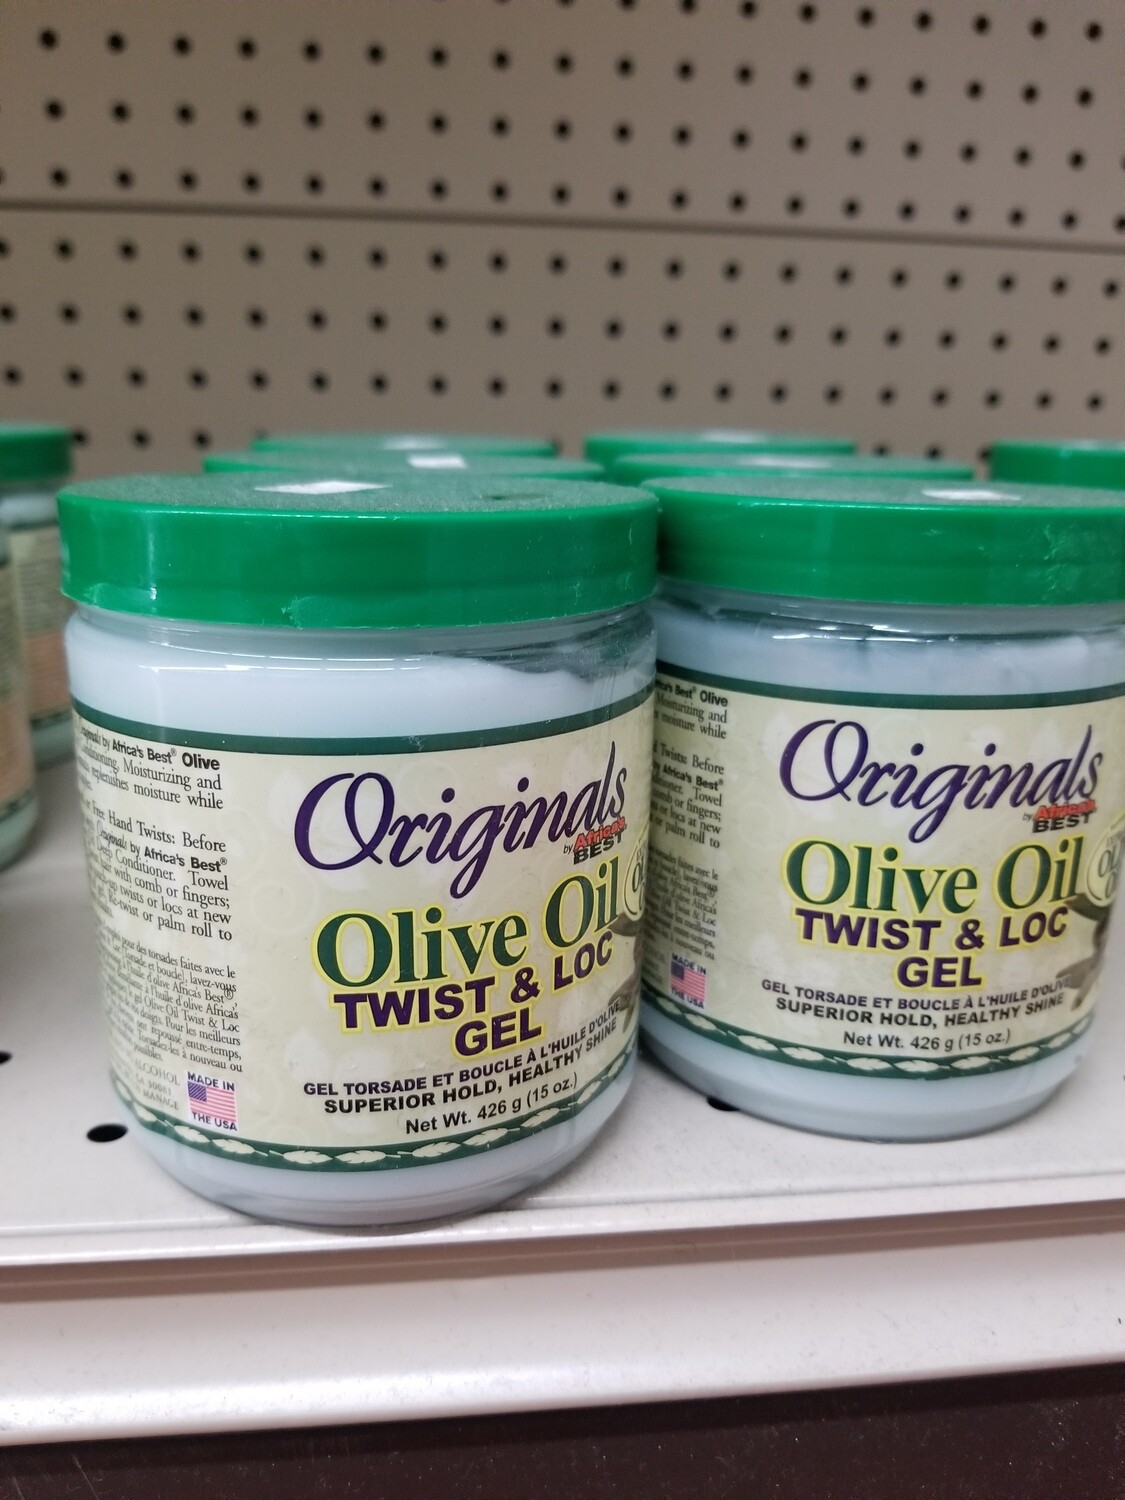 Originals Olive Oil Twist & Loc Gel